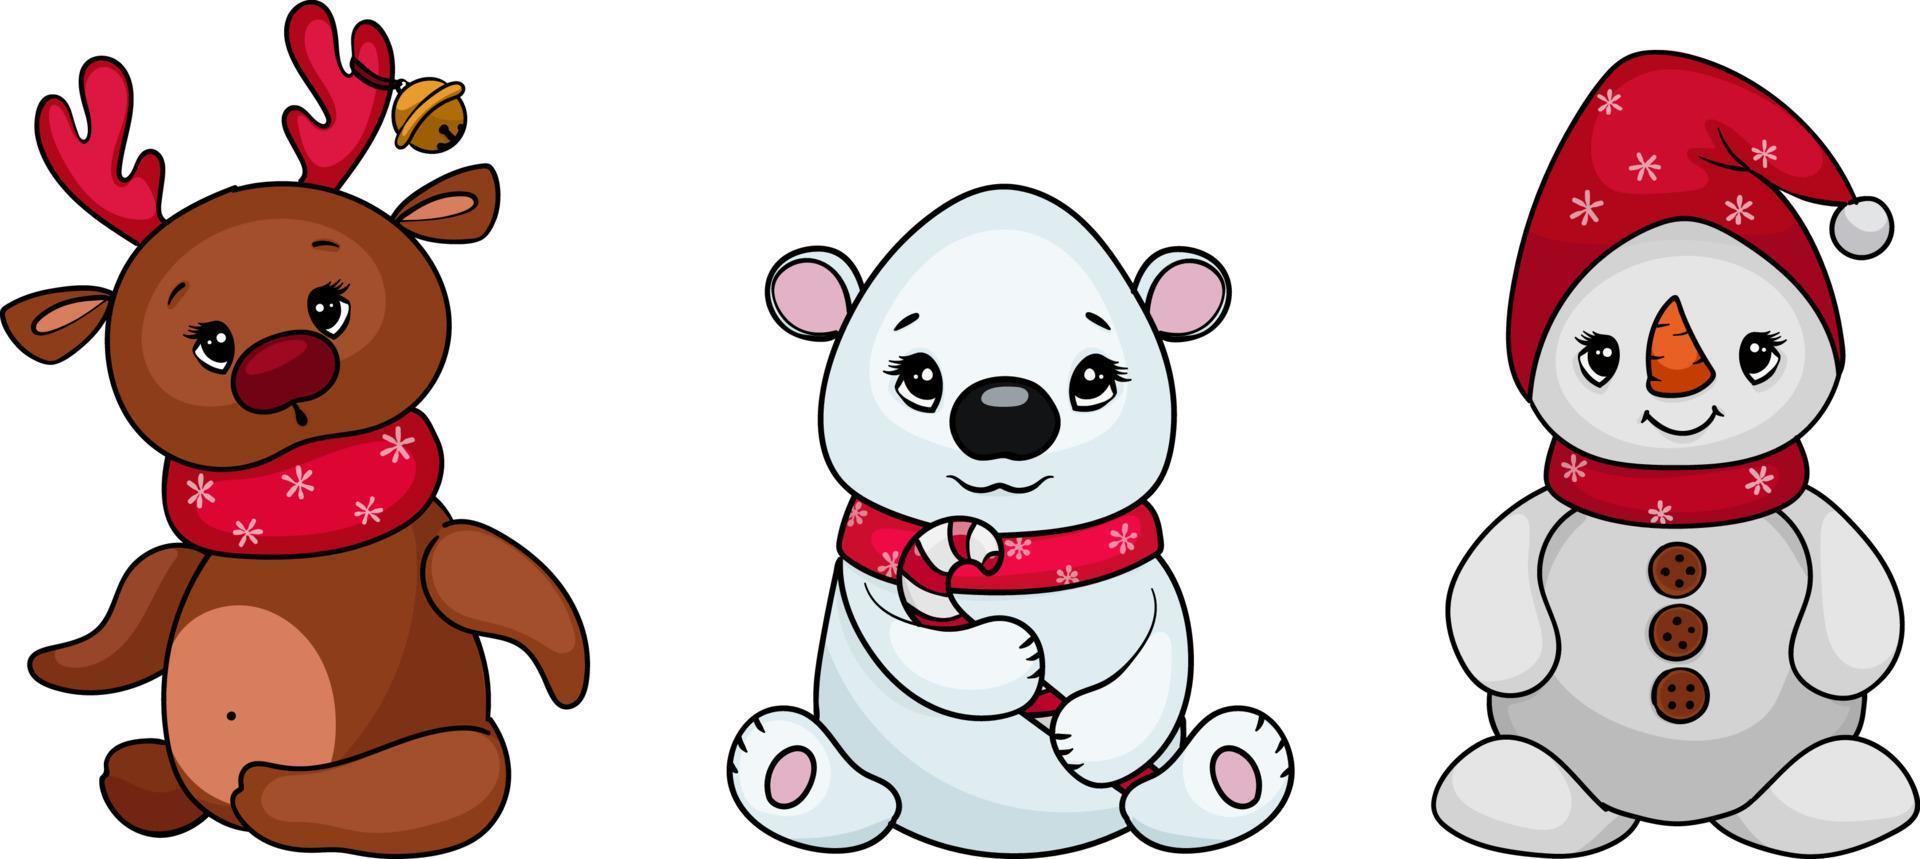 lindos personajes navideños: cervatillo, muñeco de nieve, oso blanco. ilustración vectorial en estilo de dibujos animados vector